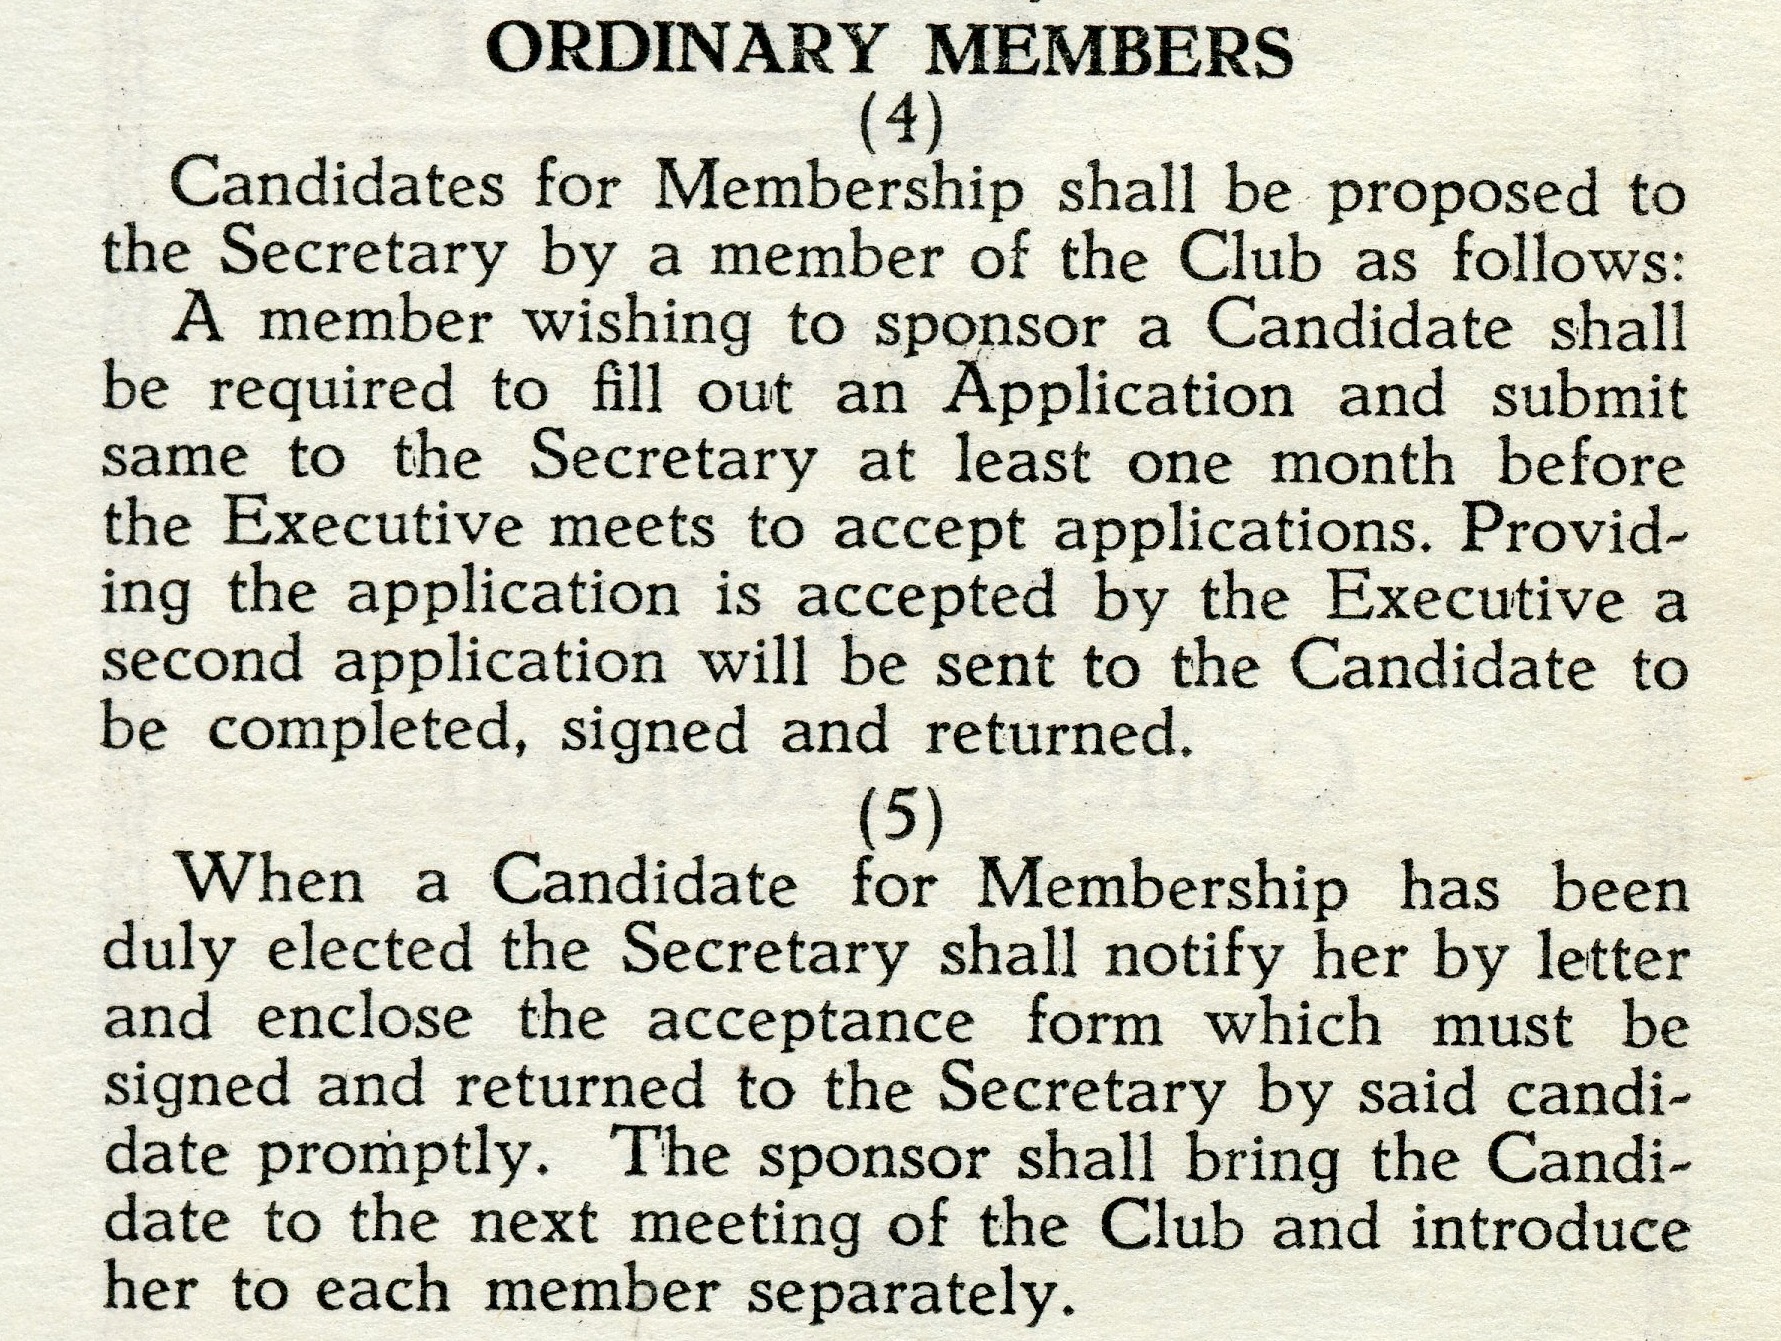 Coupure en papier de journal expliquant le processus de demande d’adhésion aux nouveaux membres.